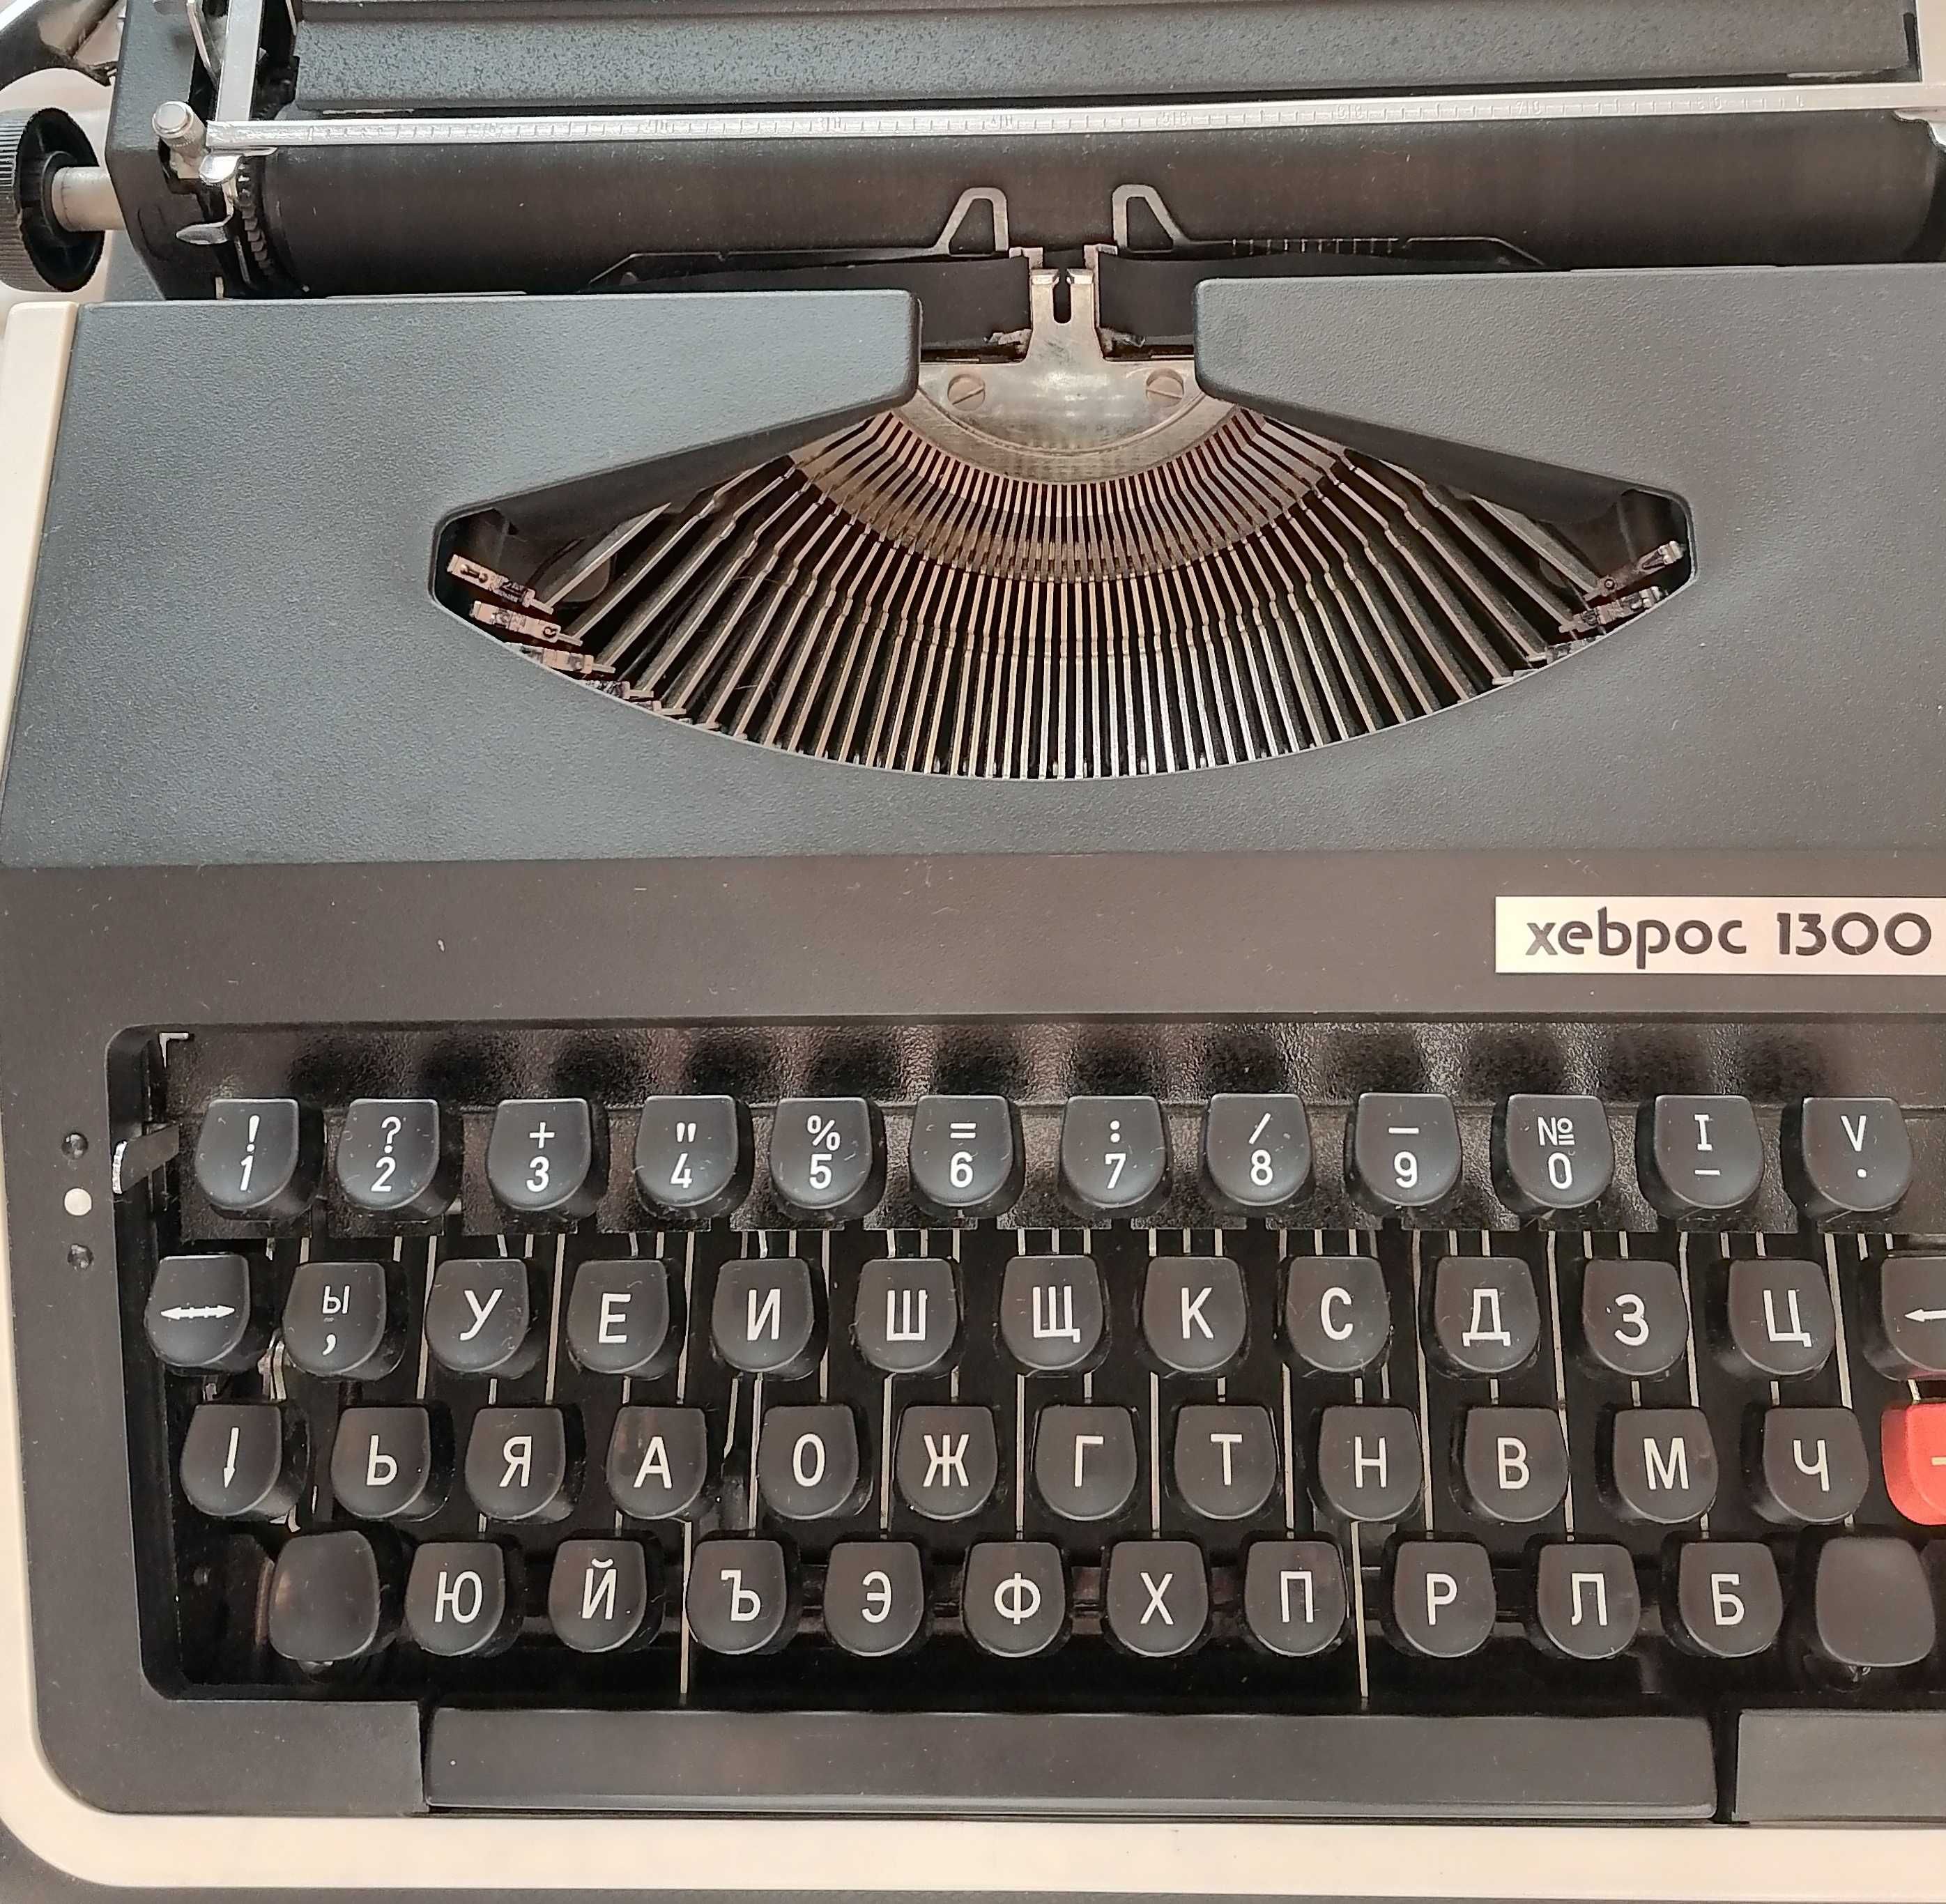 Хеброс 1300 Ф. Пишеща преносима машина.